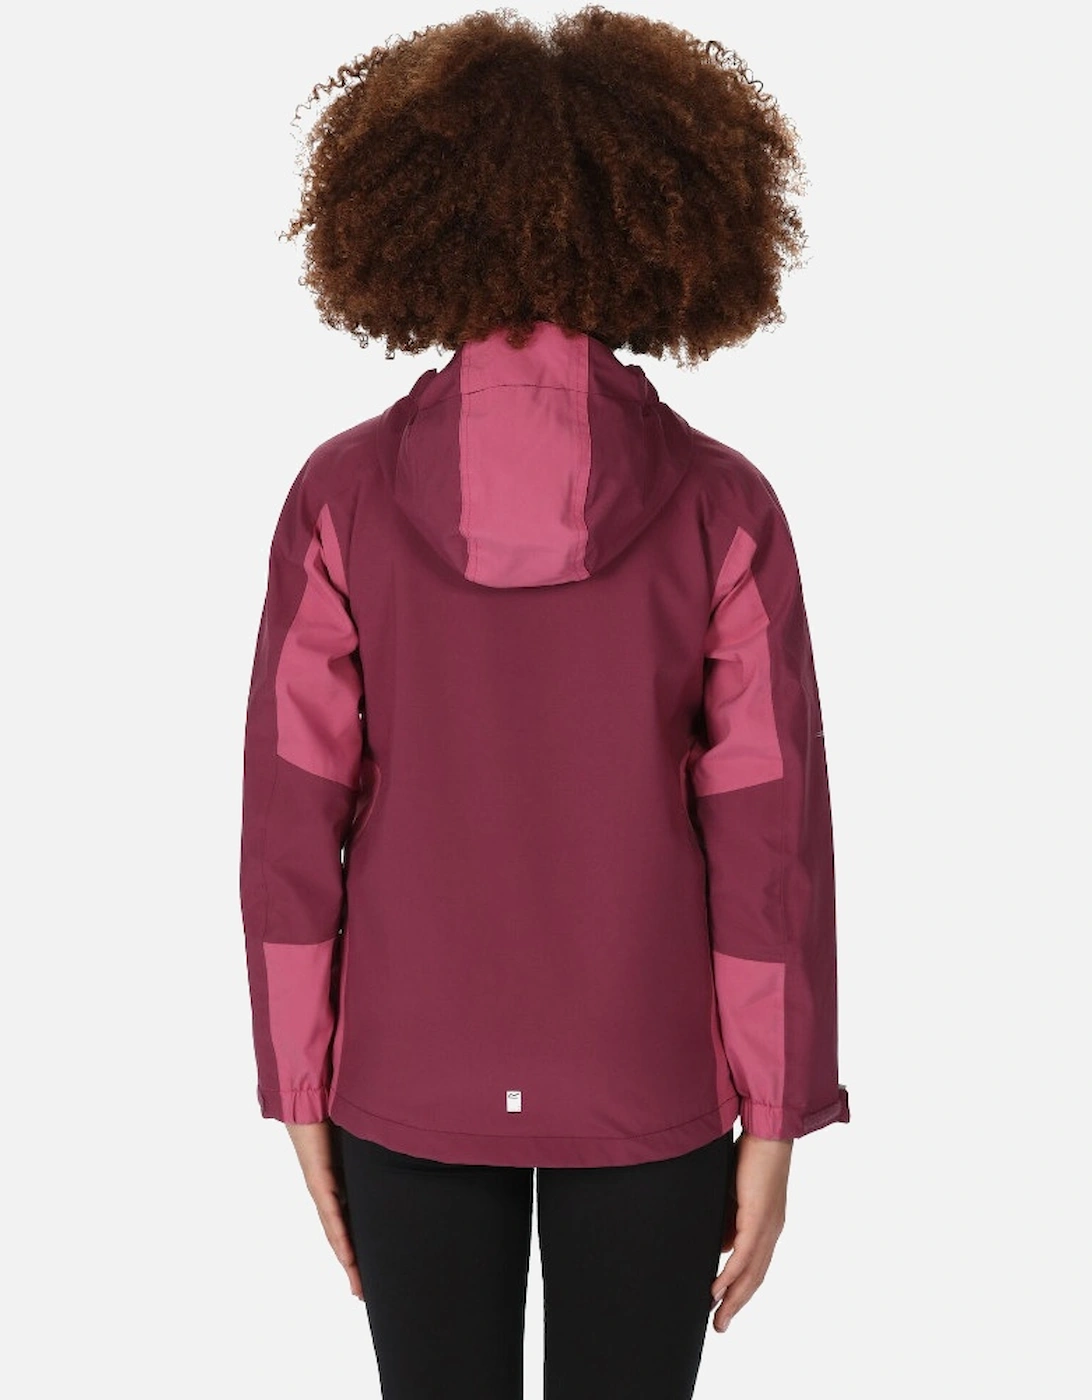 Girls Highton III Waterproof Breathable Jacket